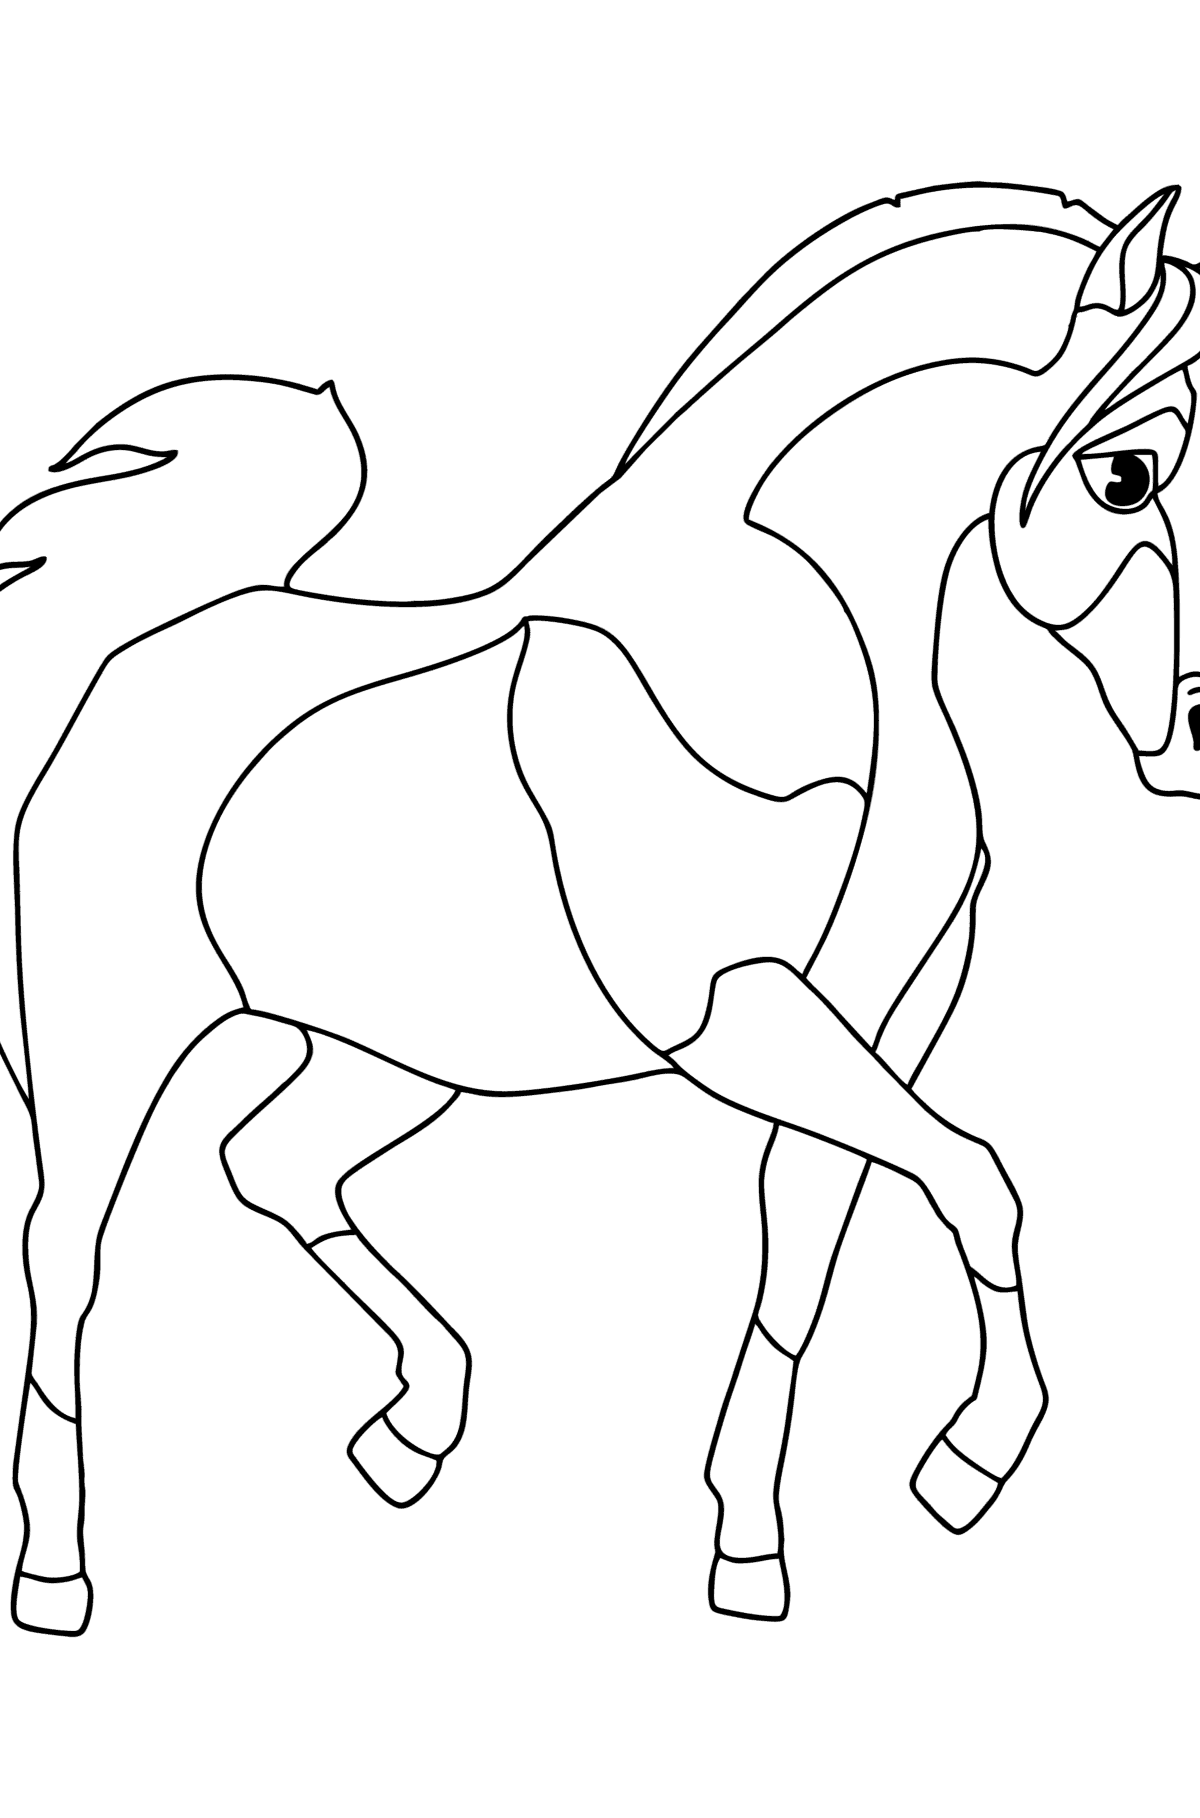 Boyama sayfası Arap atı - Boyamalar çocuklar için